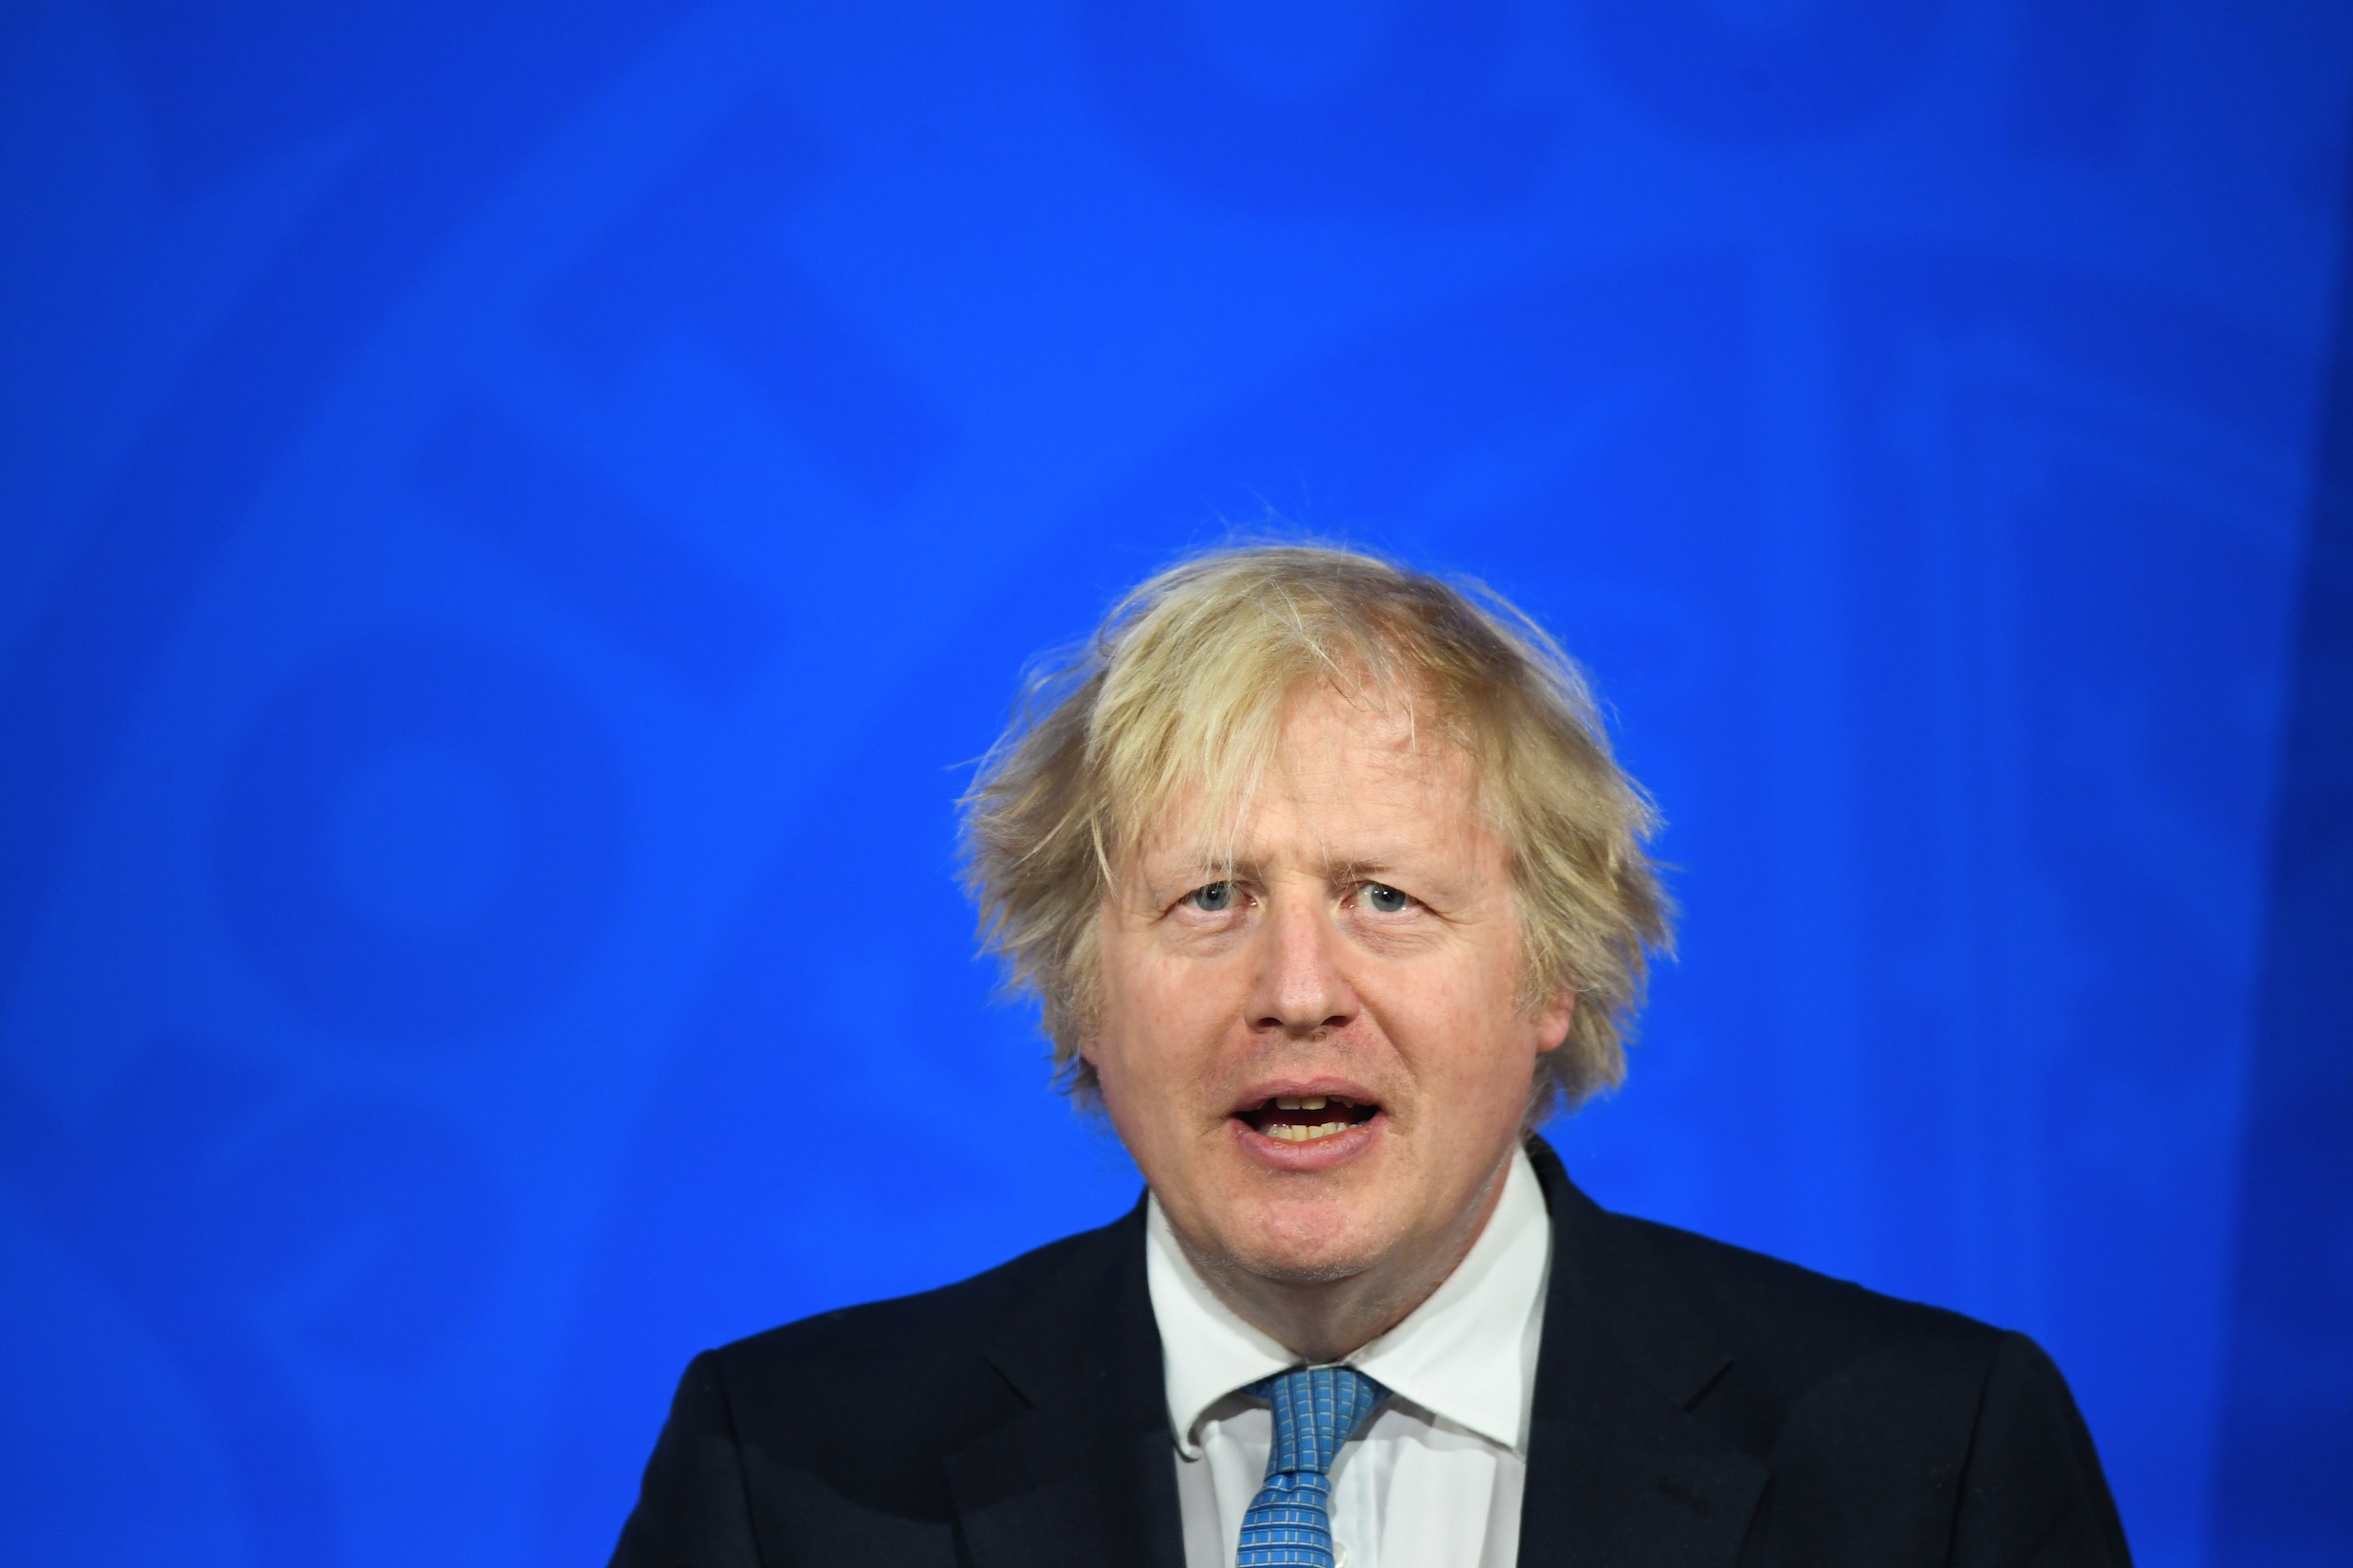 ▶ Winkels en terrassen opnieuw open: Boris Johnson bevestigt versoepelingen in Verenigd Koninkrijk op 12 april